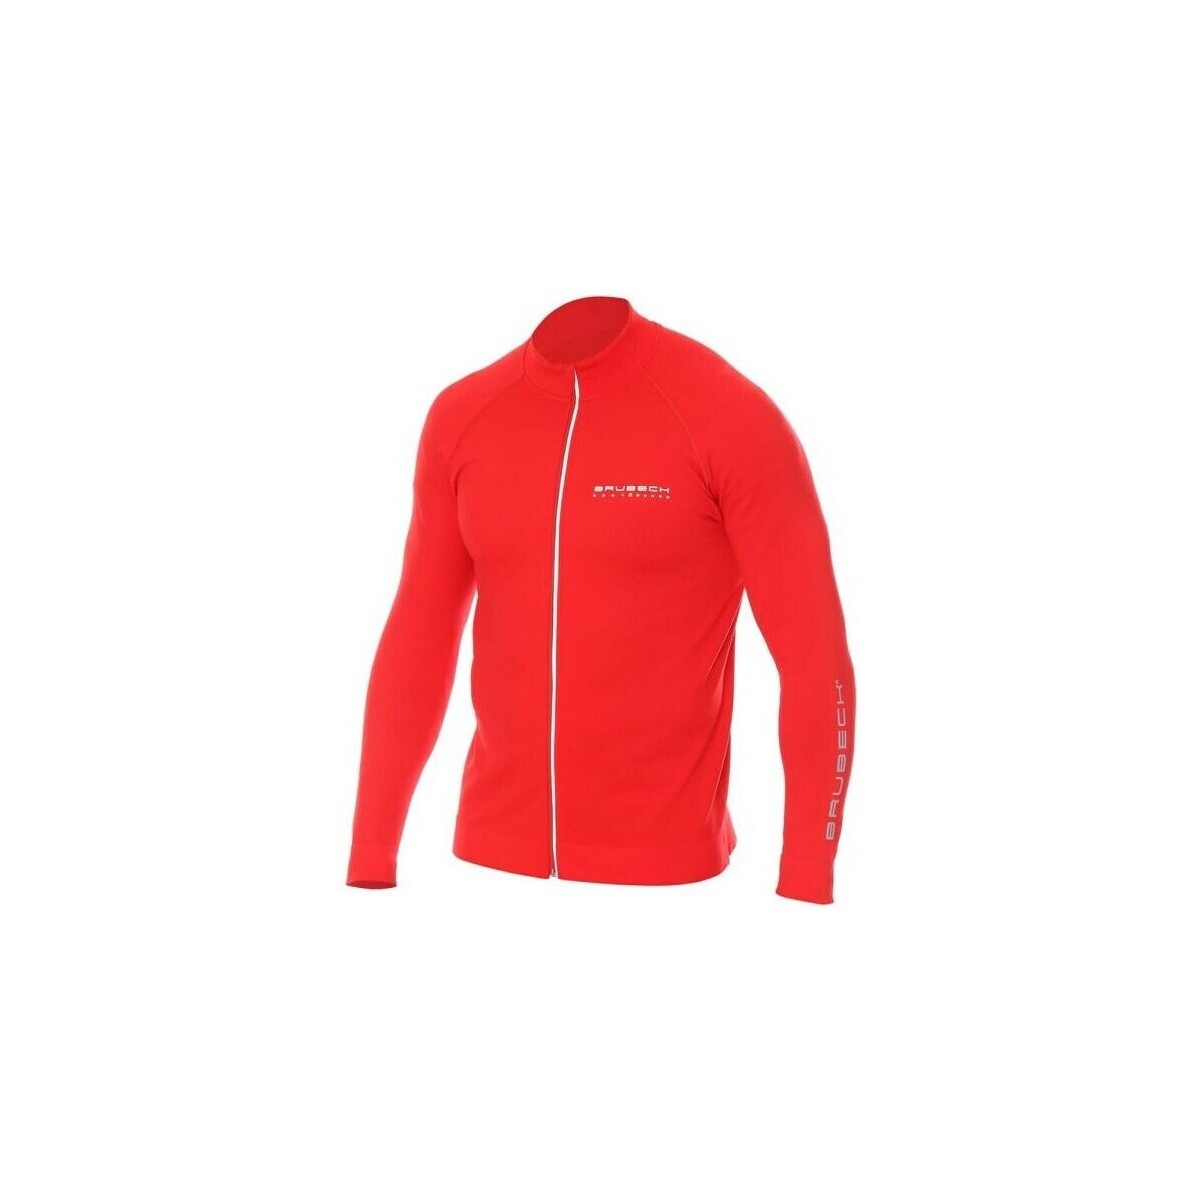 Kleidung Herren Sweatshirts Brubeck Athletic Rot